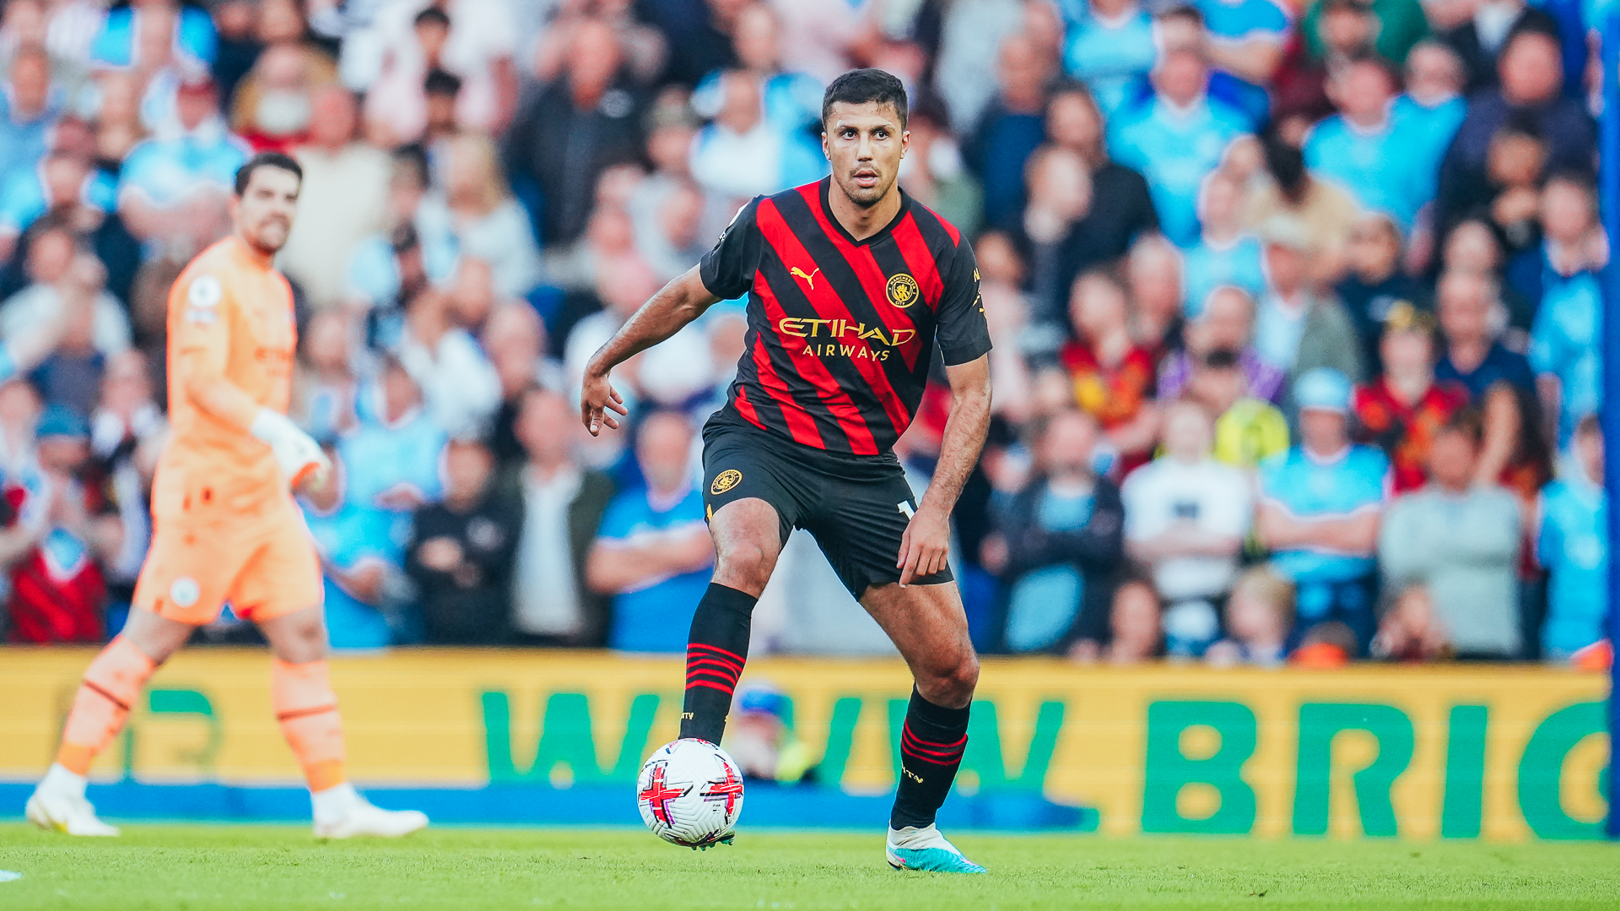 Empate contra o Brighton foi ótimo para jogar, diz Rodrigo